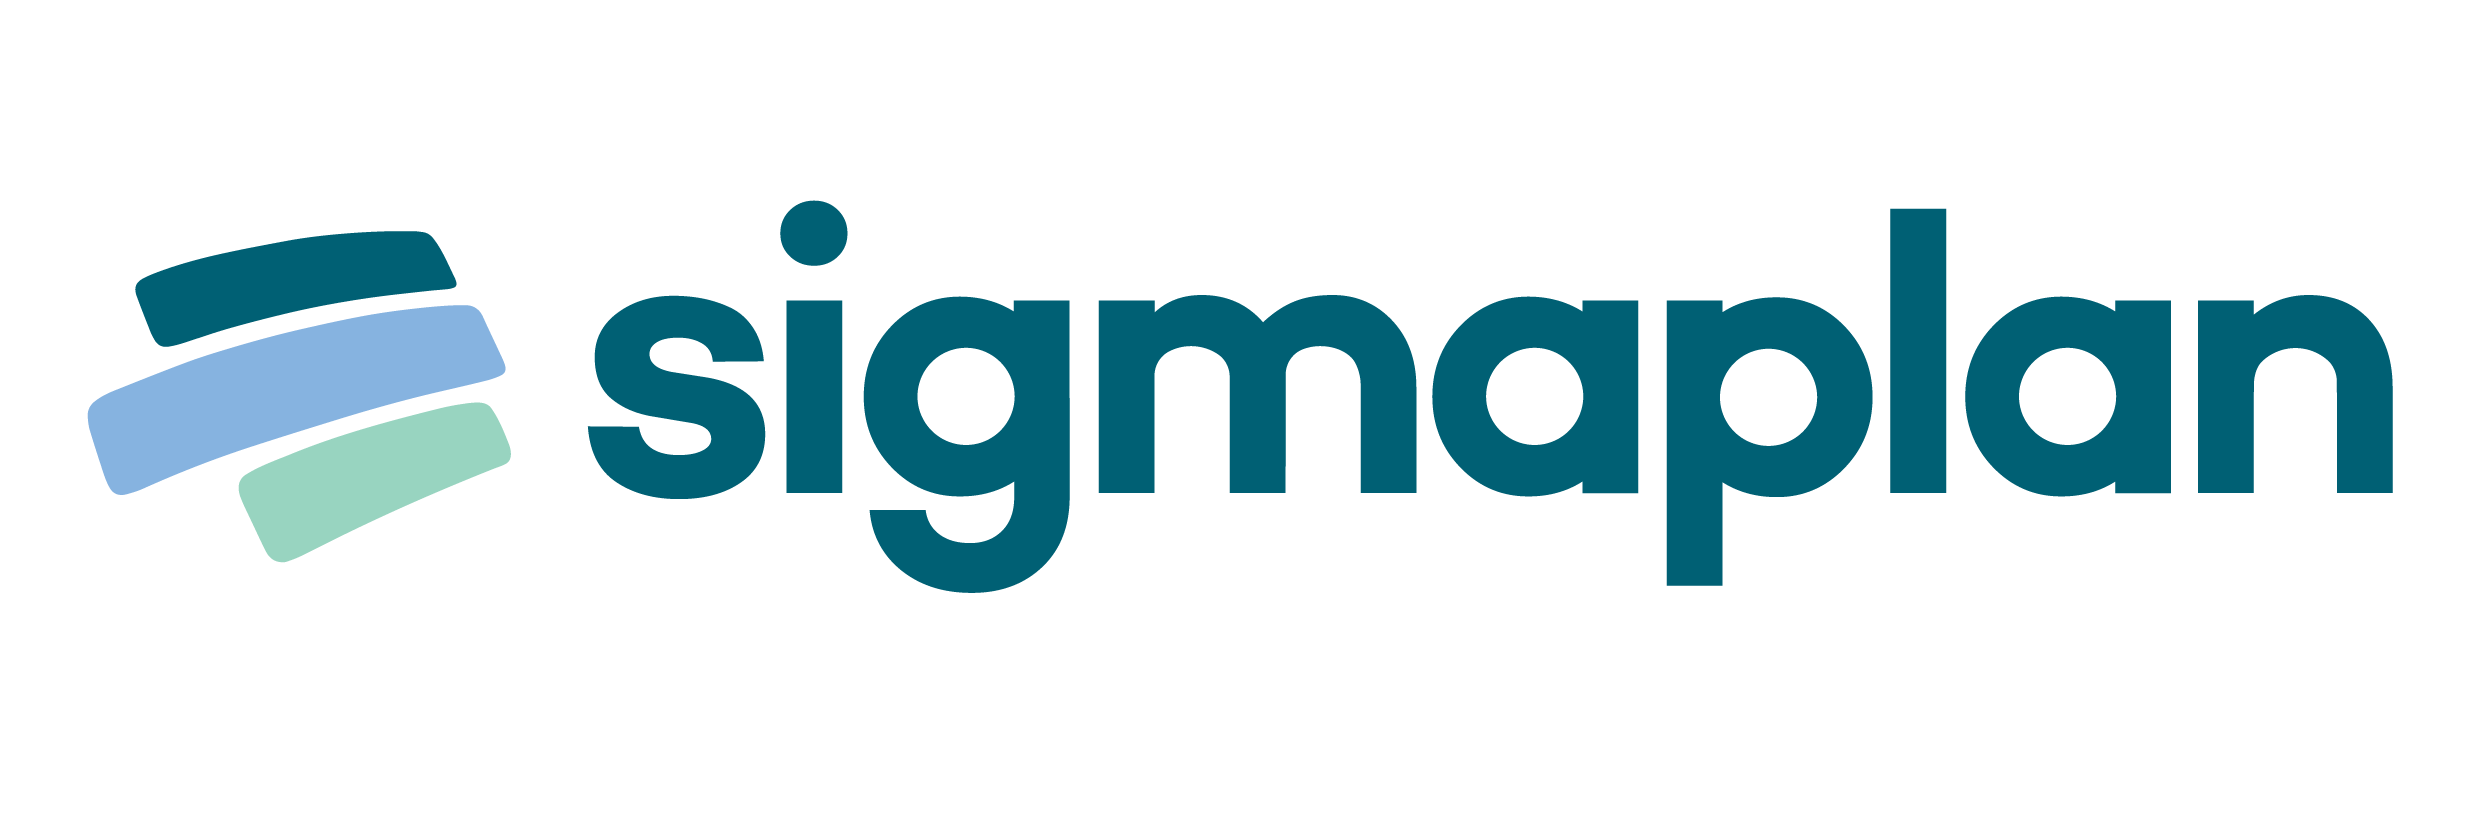 Sigmaplan logo